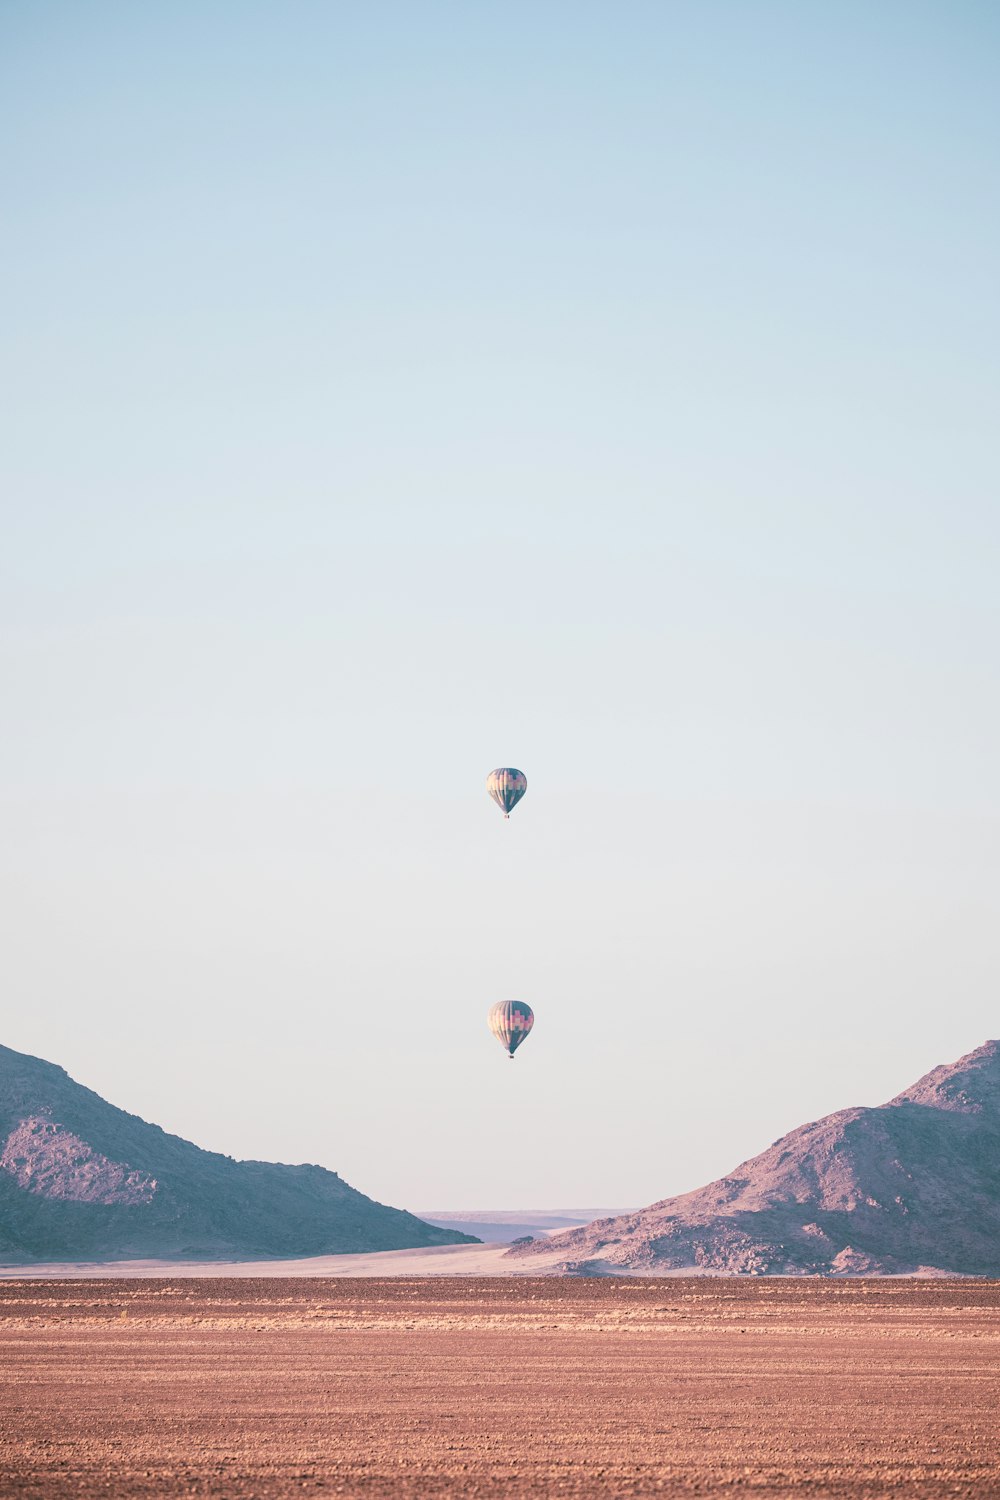 Heißluftballons tagsüber am Himmel